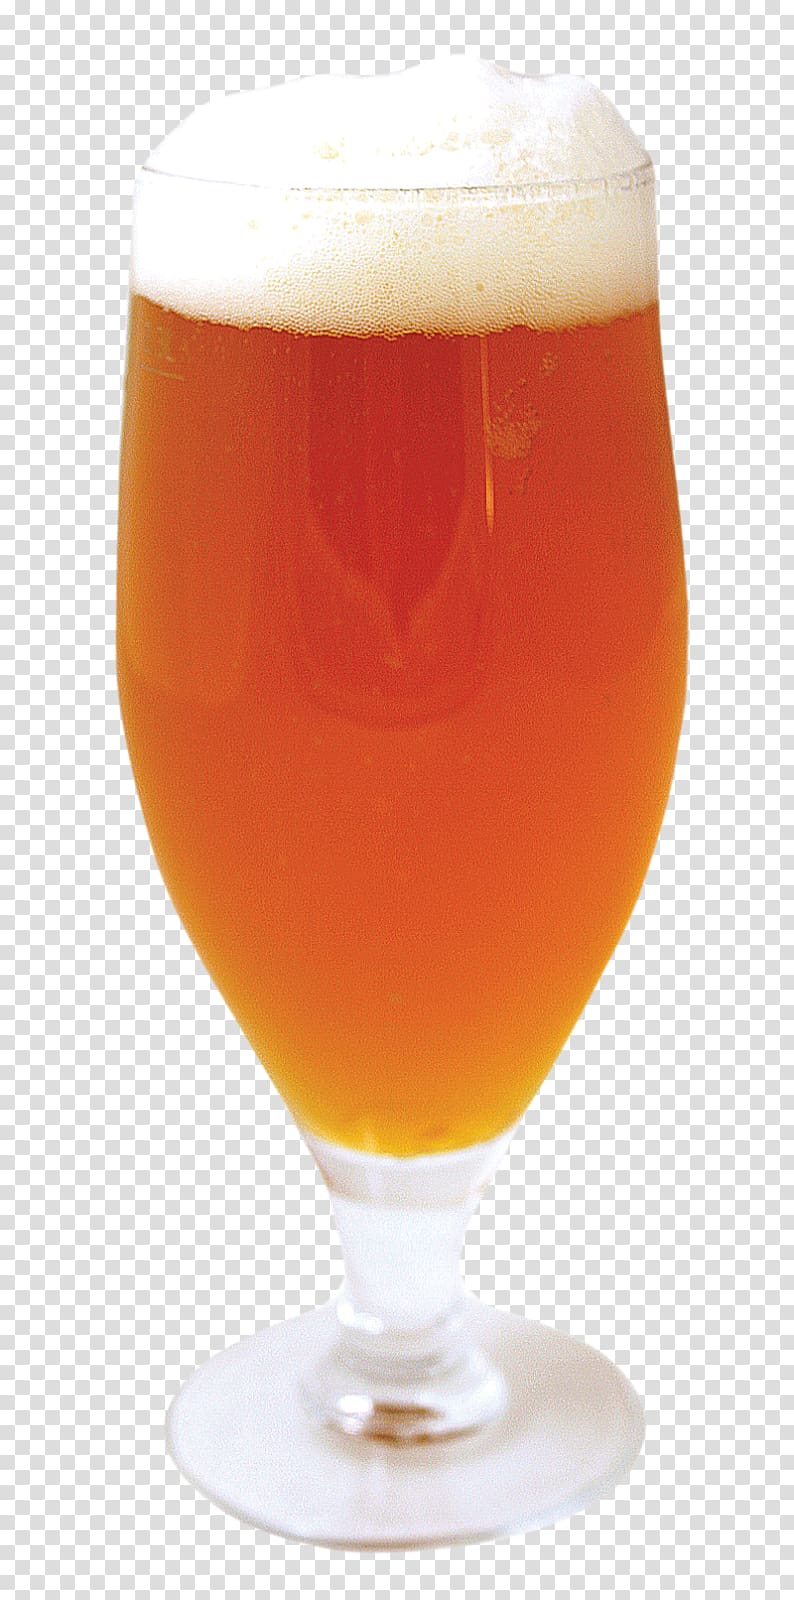 Beer cocktail Ale Beer glassware, goblet beer transparent background PNG clipart